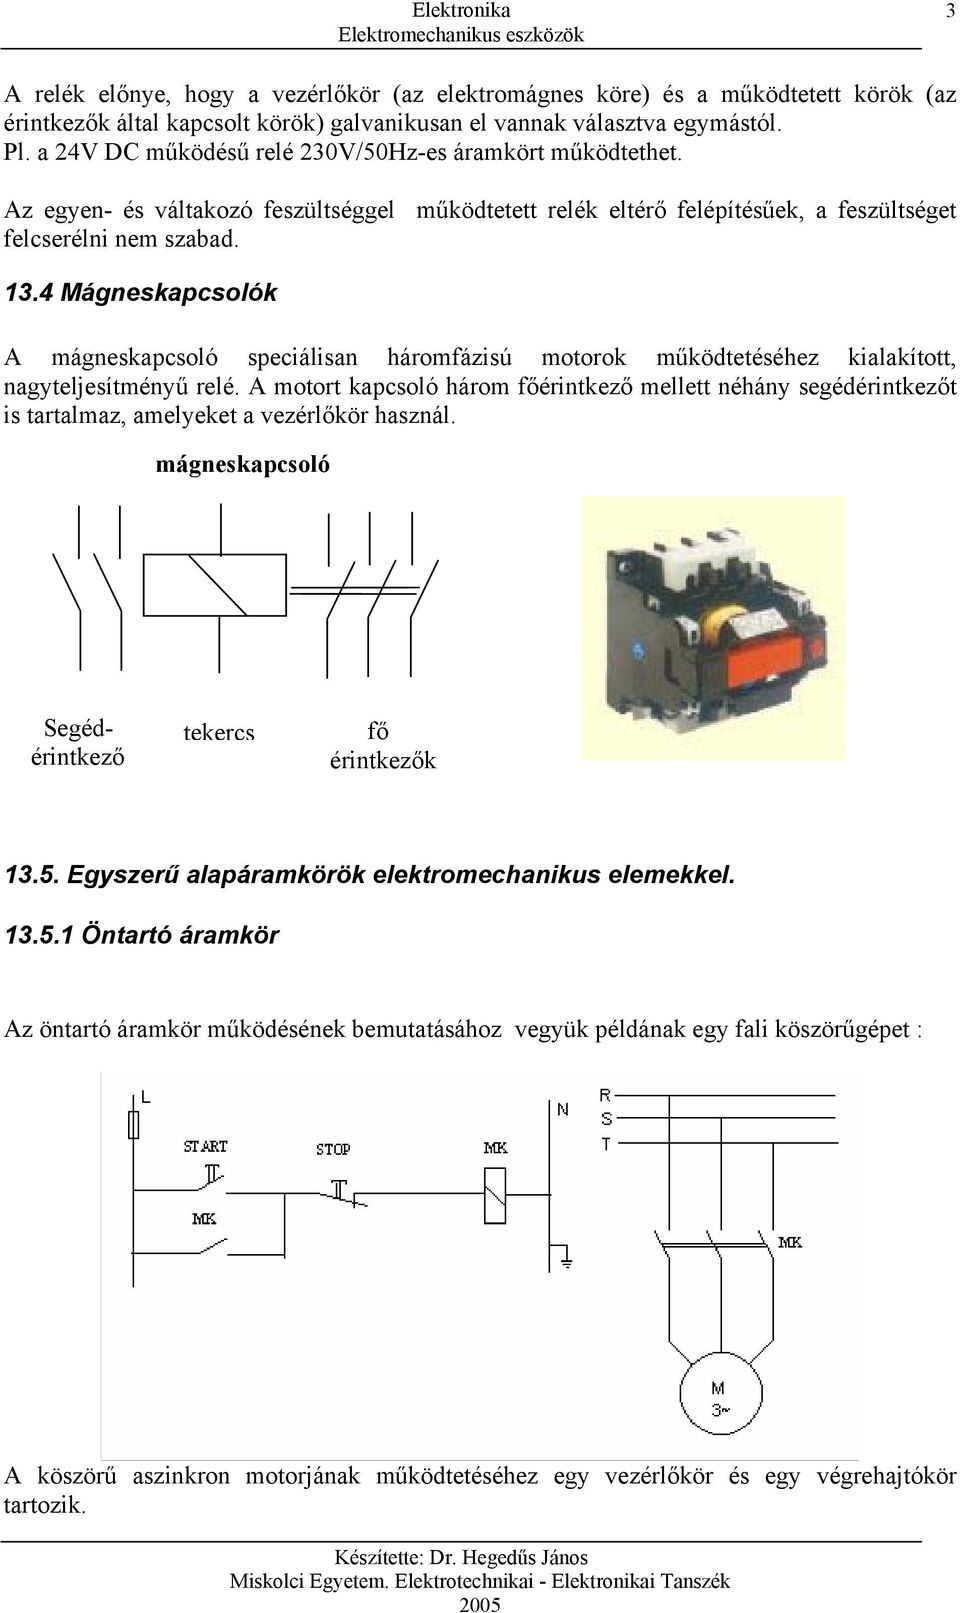 13. Elektromechanikus eszközök - PDF Ingyenes letöltés